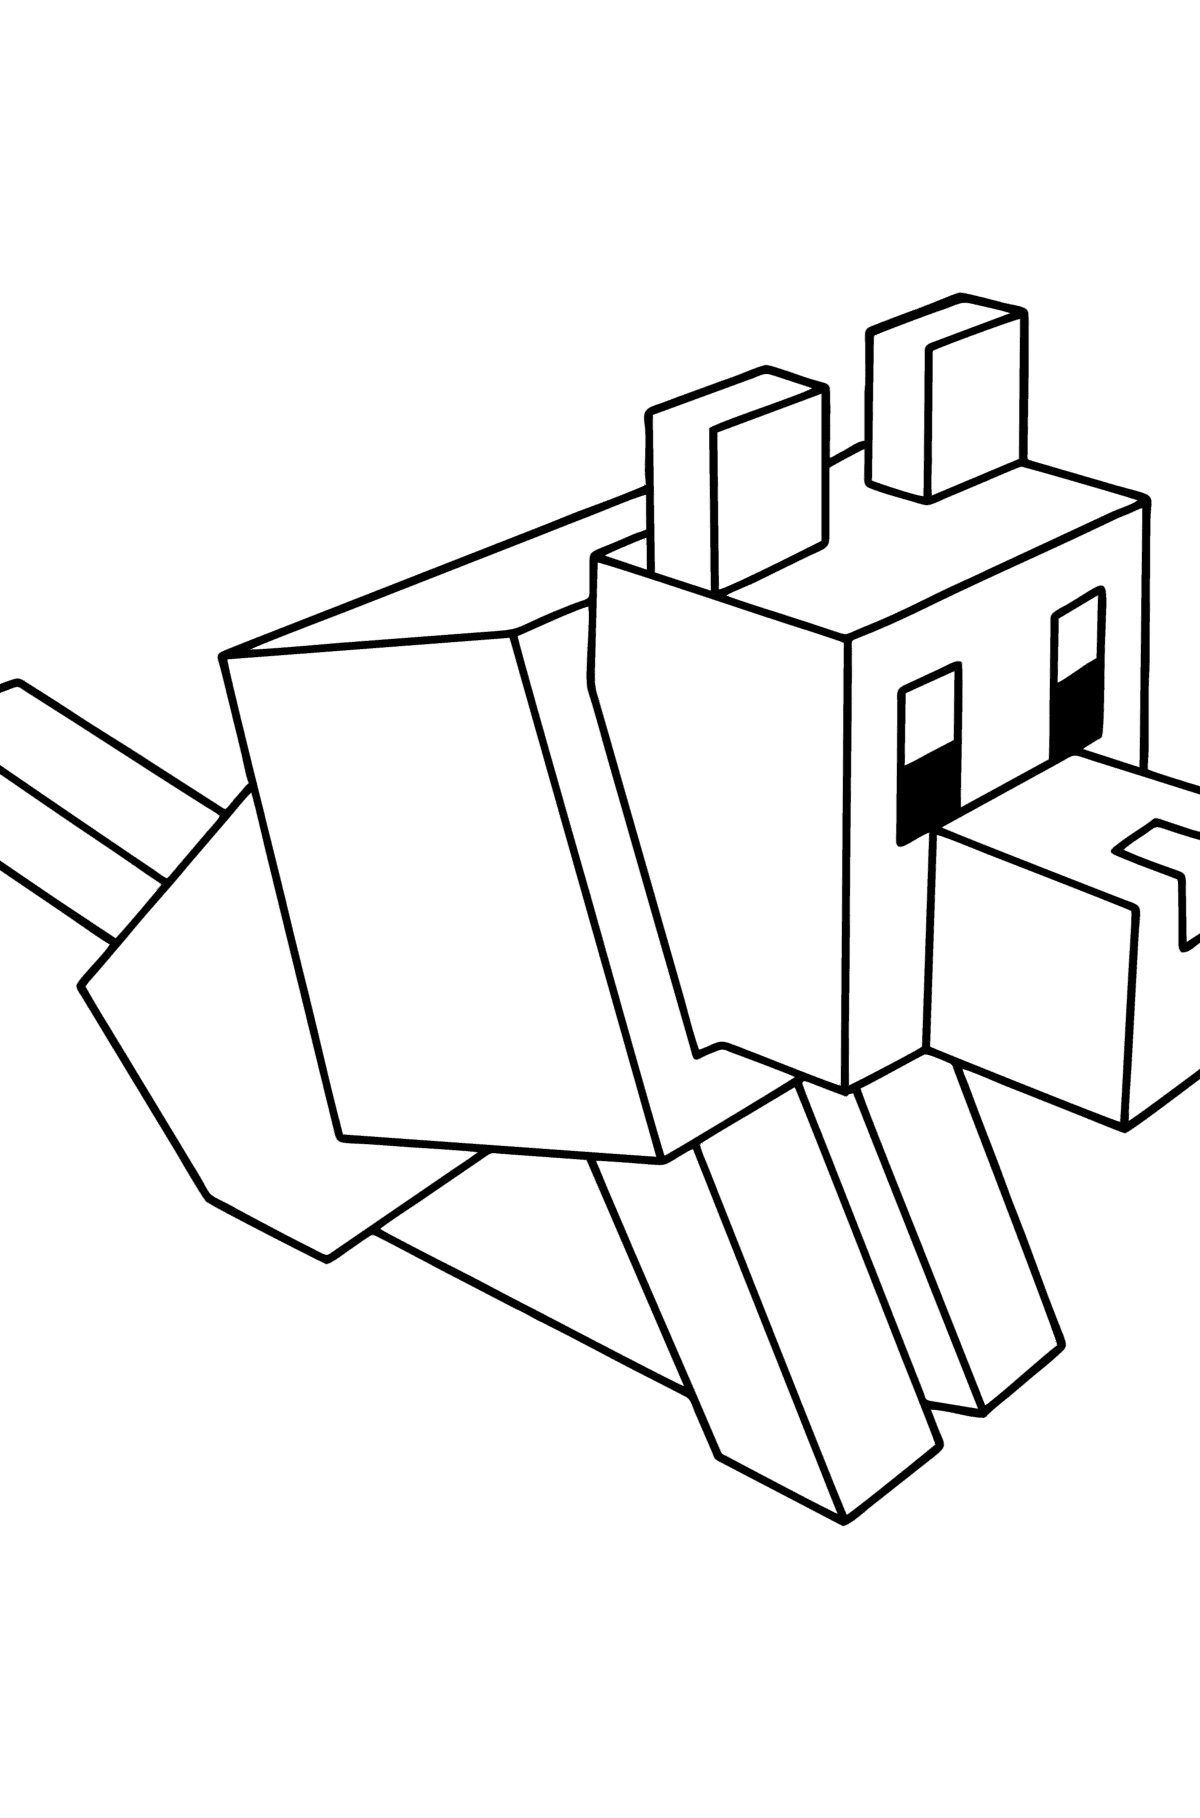 Tegning til fargelegging Minecraft Wolf - Tegninger til fargelegging for barn